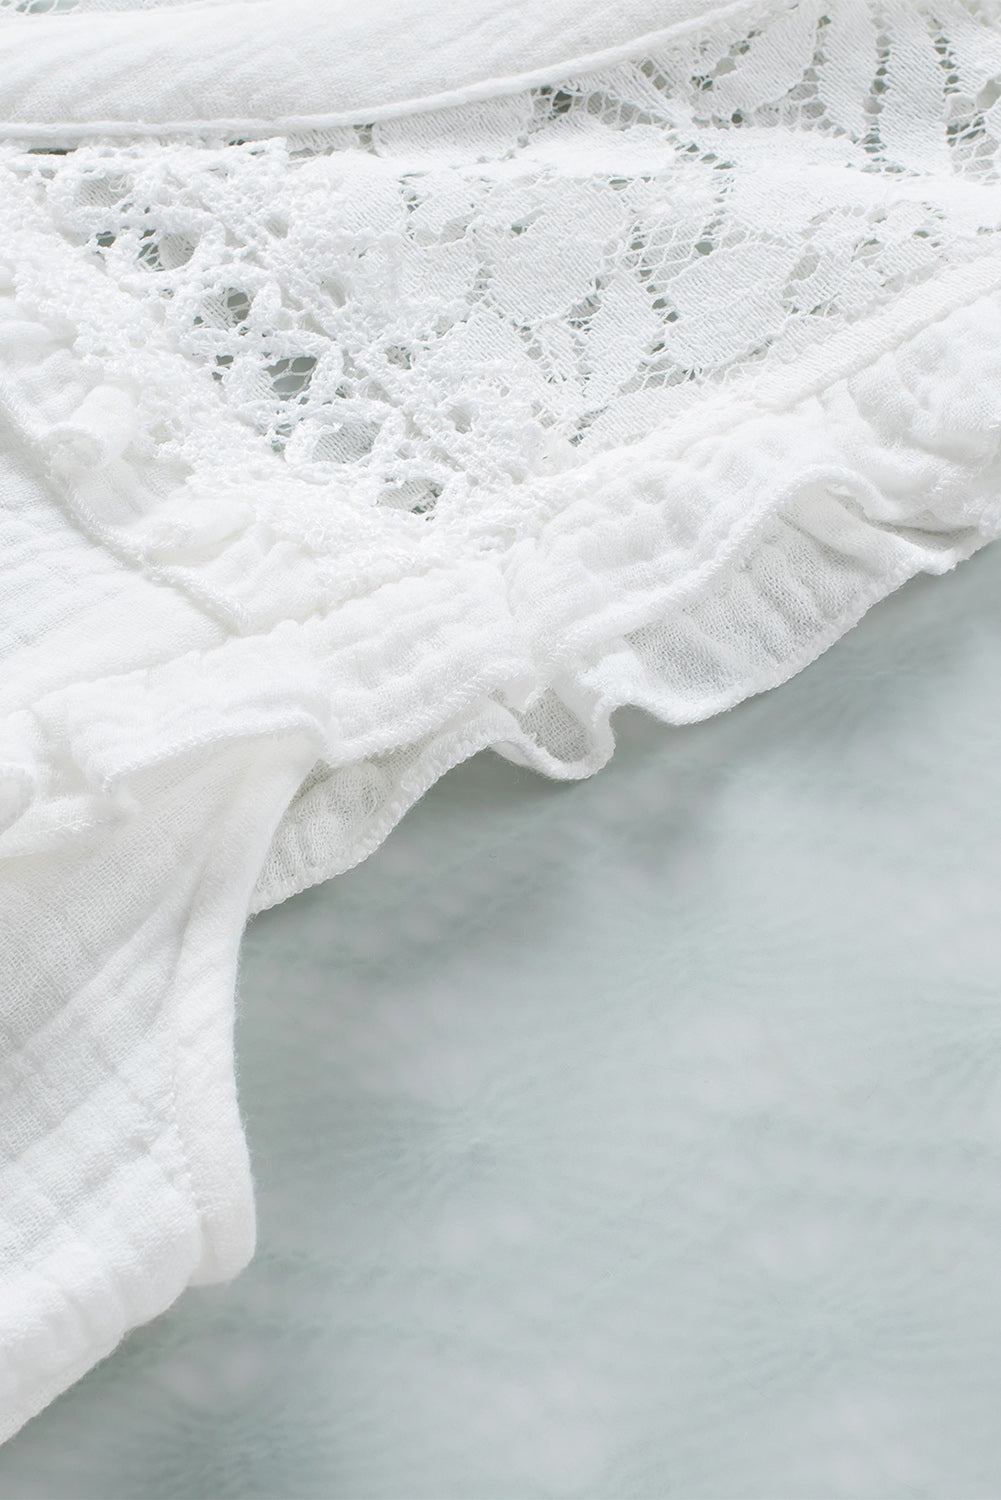 Chemise sans manches texturée au crochet en dentelle florale blanche